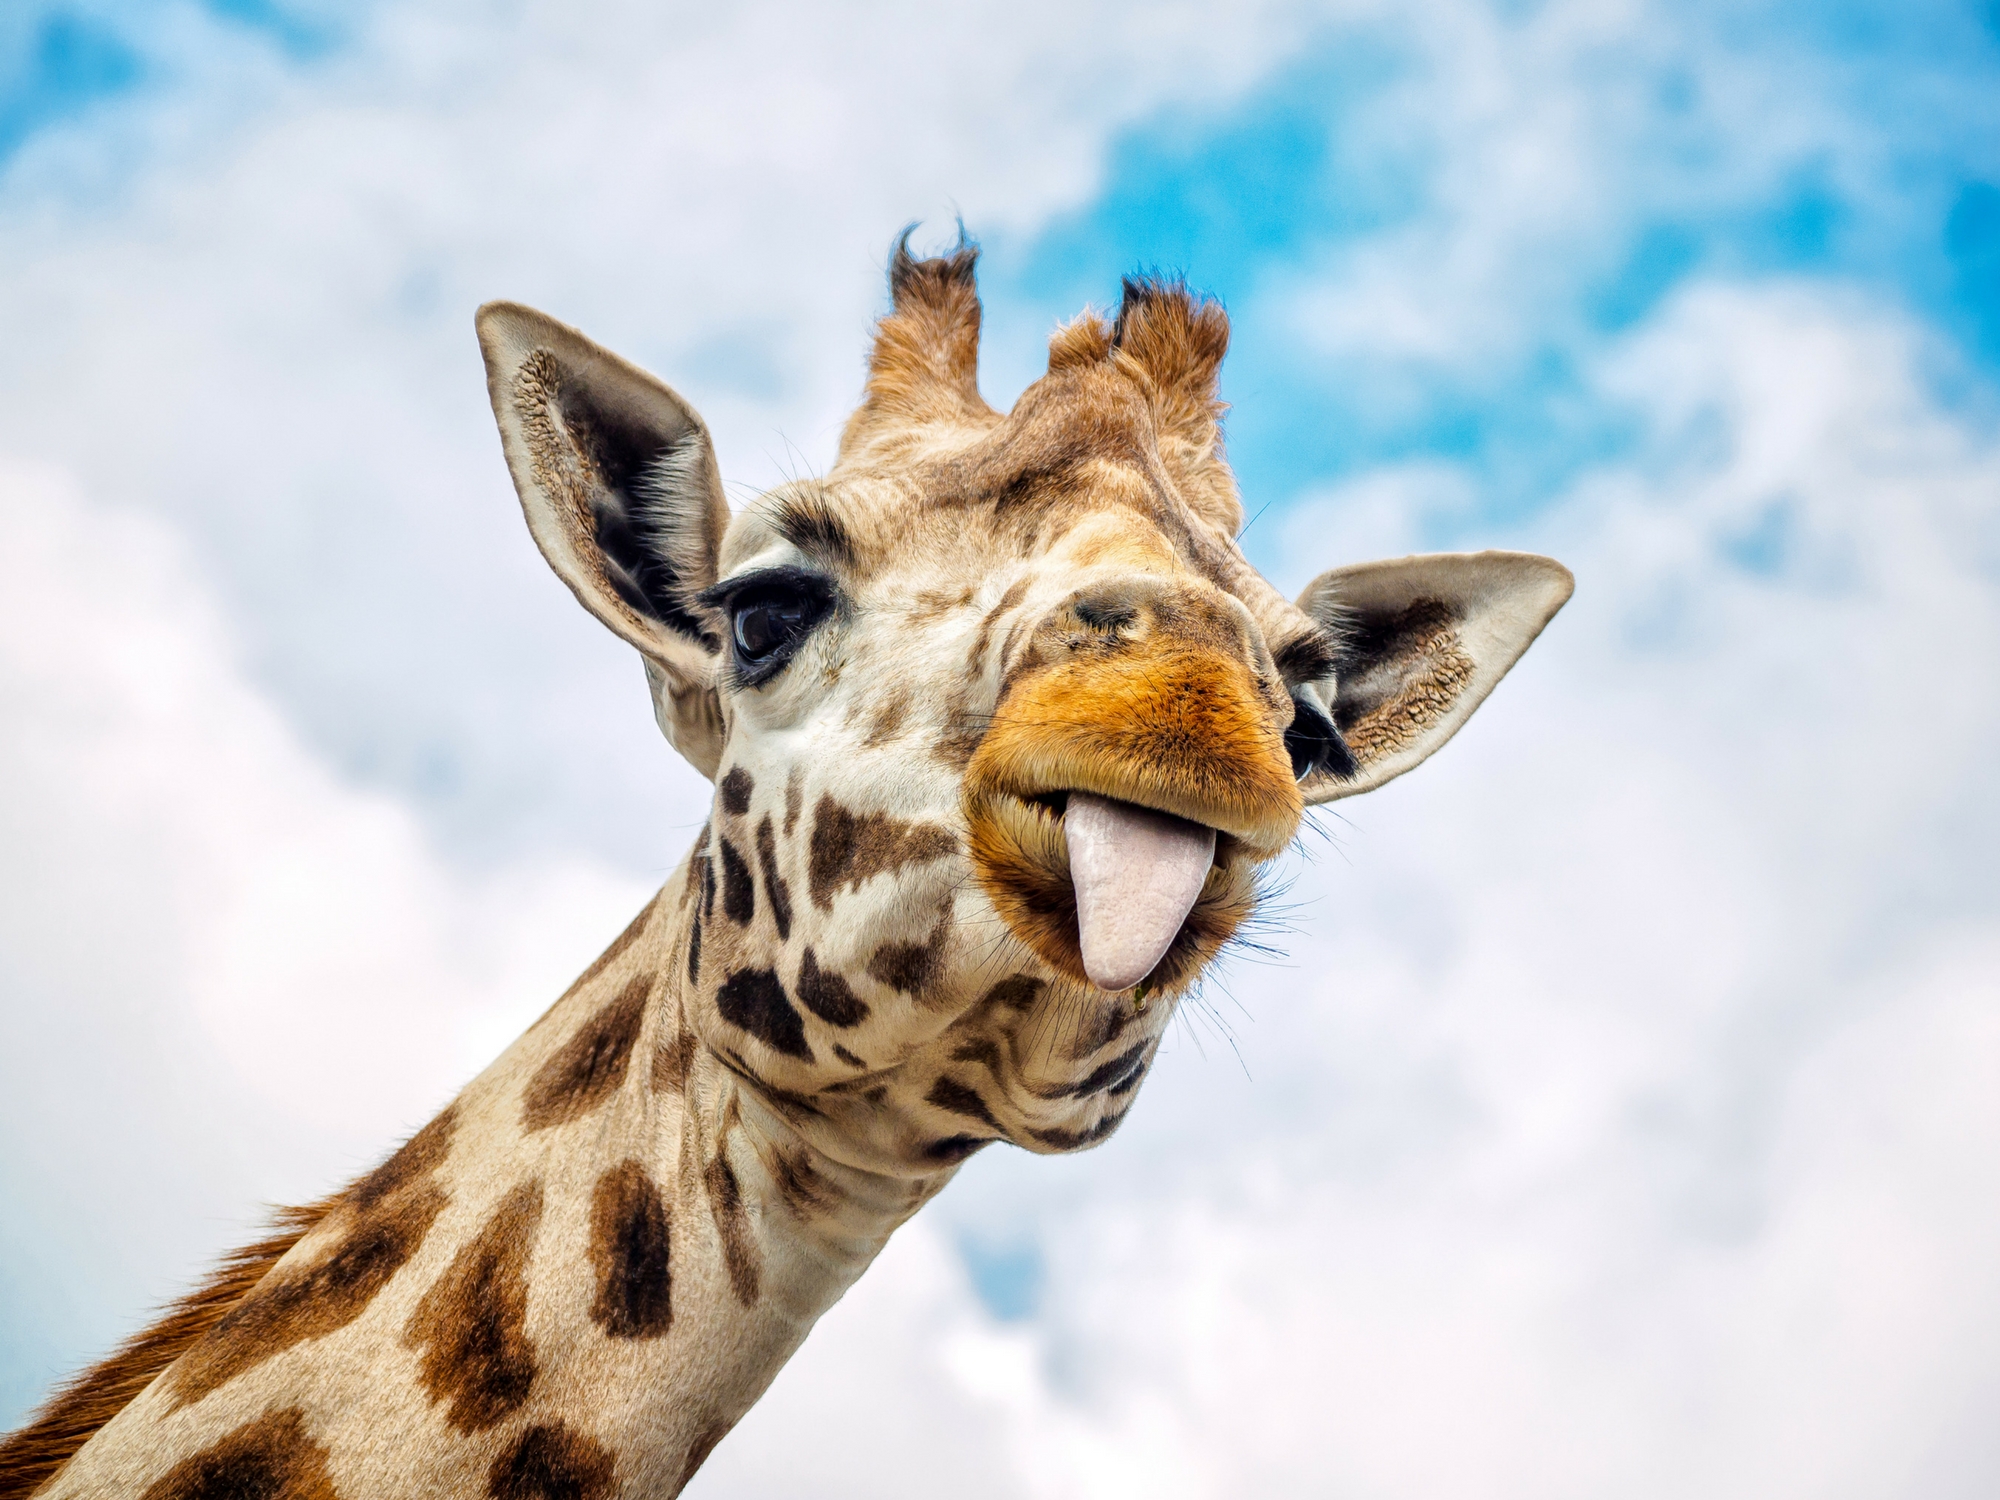 Afrique du sud : Une girafe squatte leurs photos de mariage !